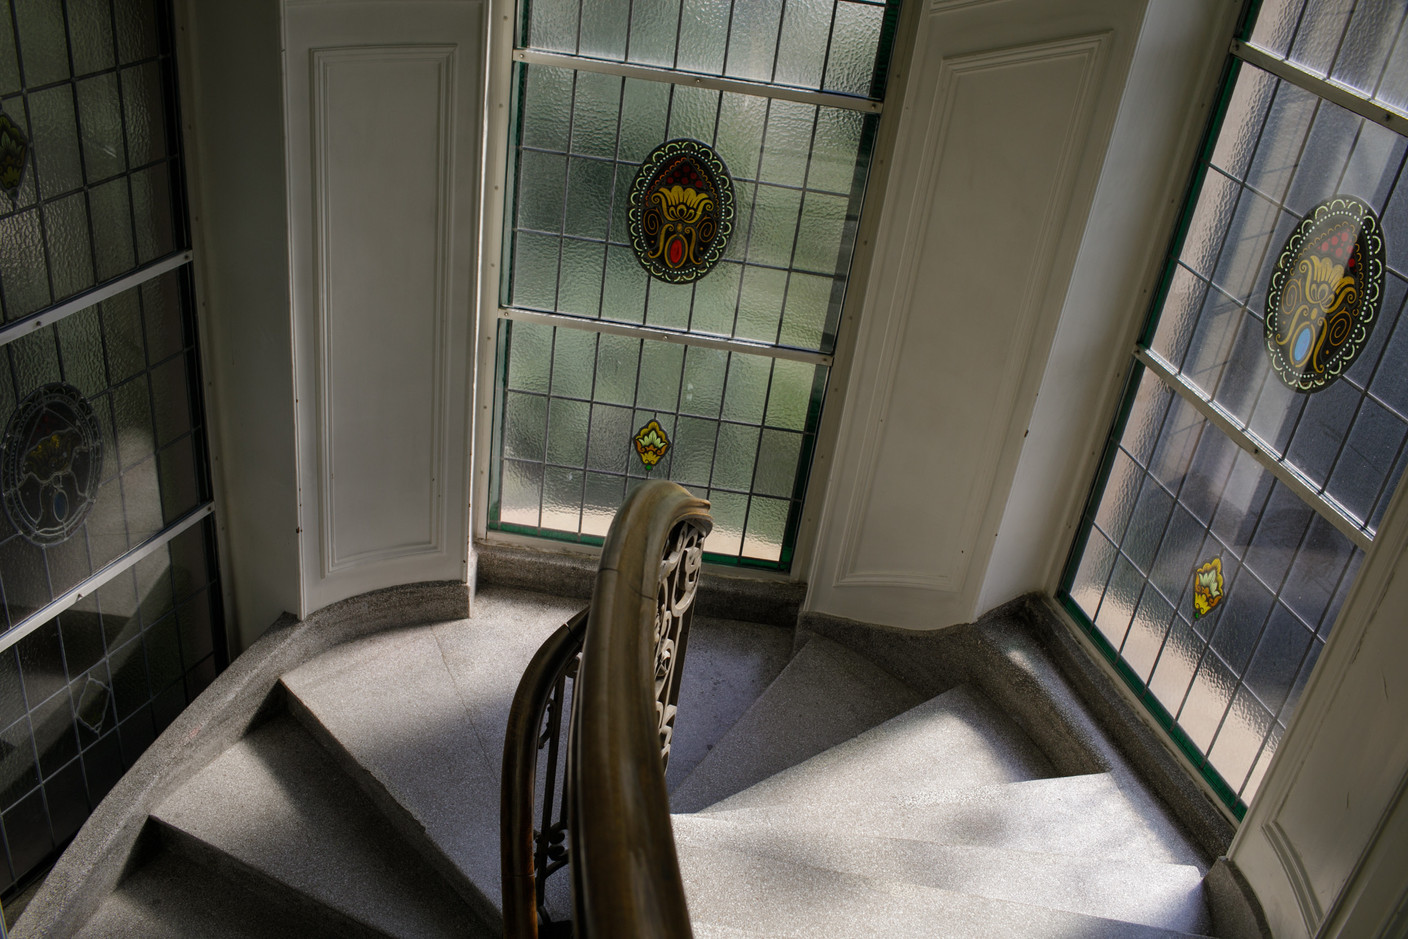 Vitraux dans les escaliers (Photo: Matic Zorman/Maison Moderne)